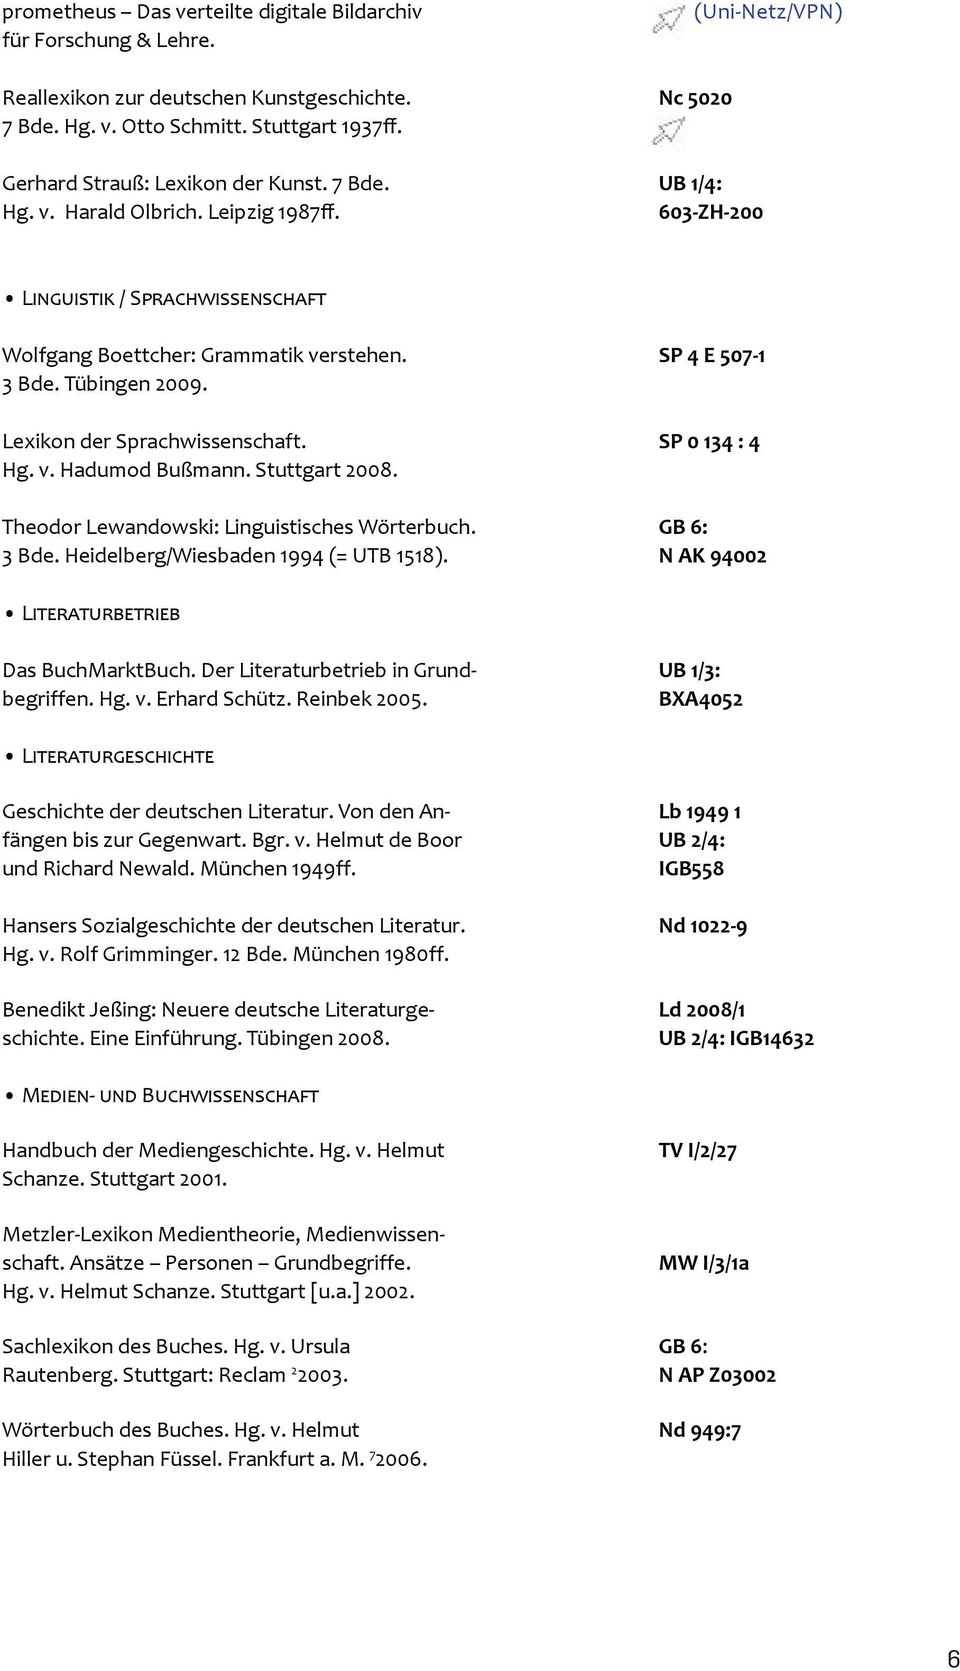 Tübingen 2009. Lexikon der Sprachwissenschaft. SP 0 134 : 4 Hg. v. Hadumod Bußmann. Stuttgart 2008. Theodor Lewandowski: Linguistisches Wörterbuch. GB 6: 3 Bde. Heidelberg/Wiesbaden 1994 (= UTB 1518).